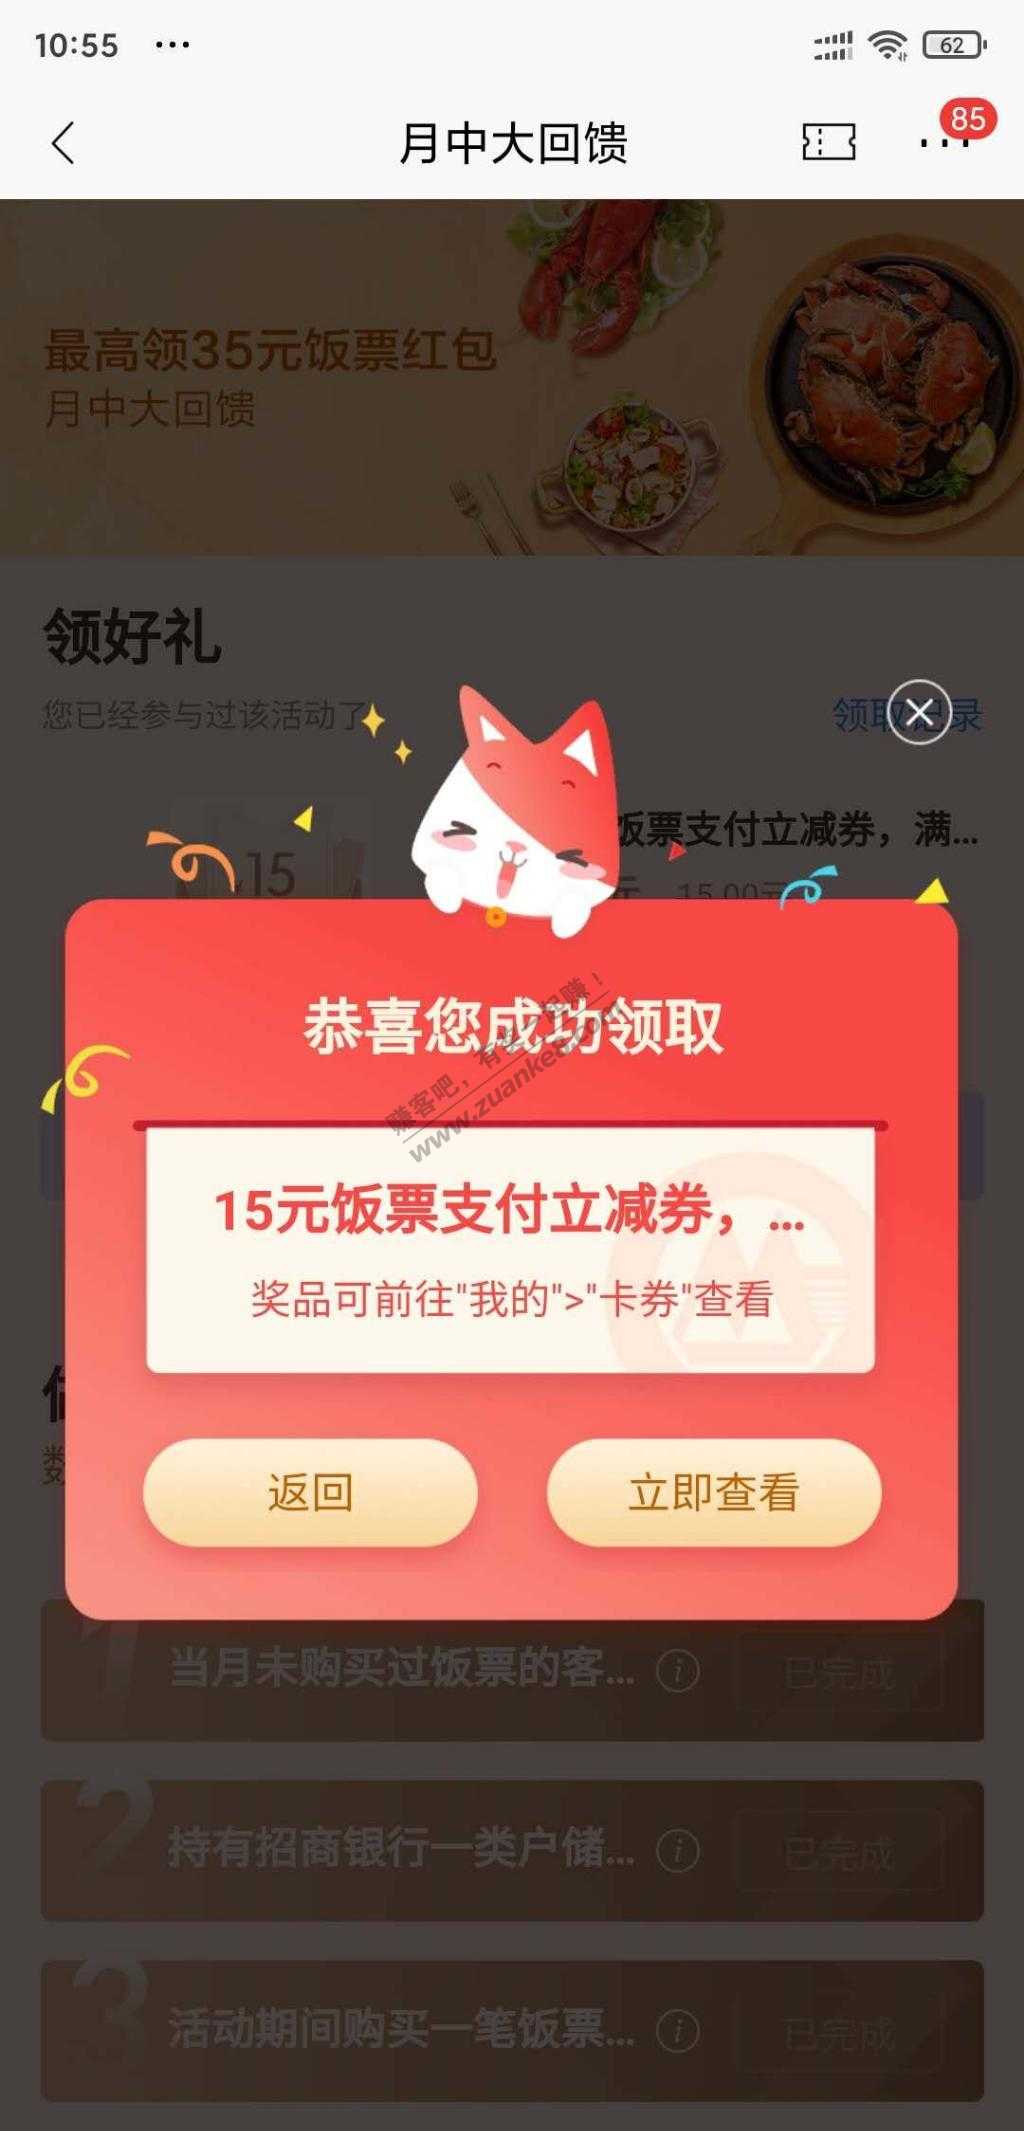 招商app-35饭票-惠小助(52huixz.com)